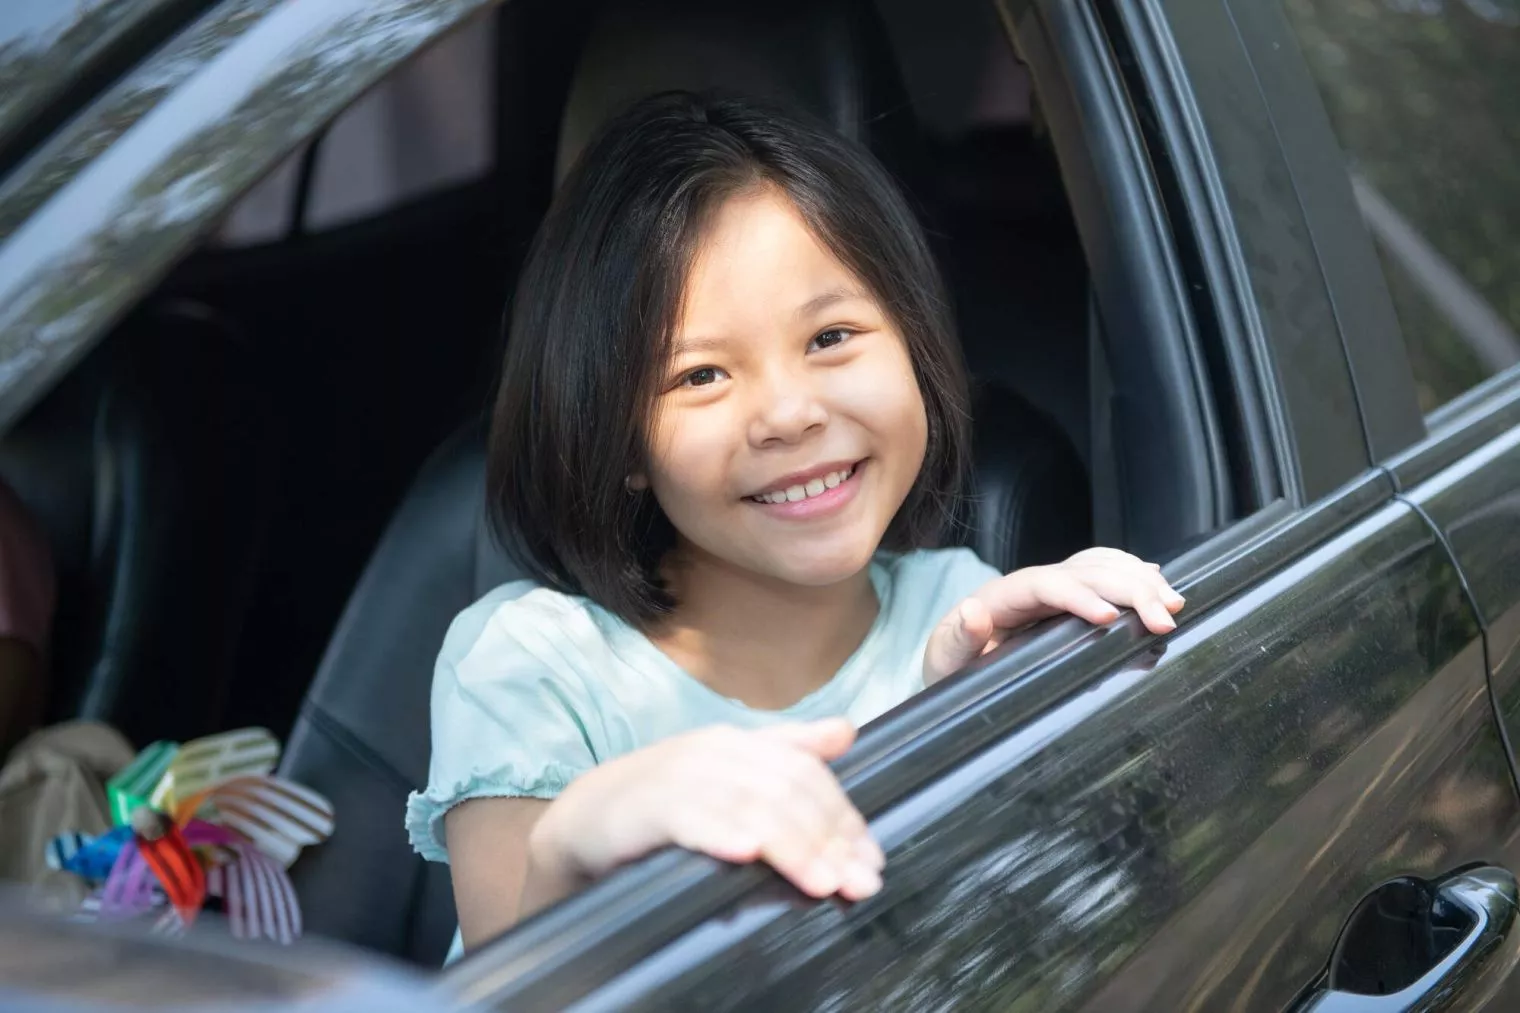 Mengatasi Anak Tantrum di Kendaraan dalam Perjalanan